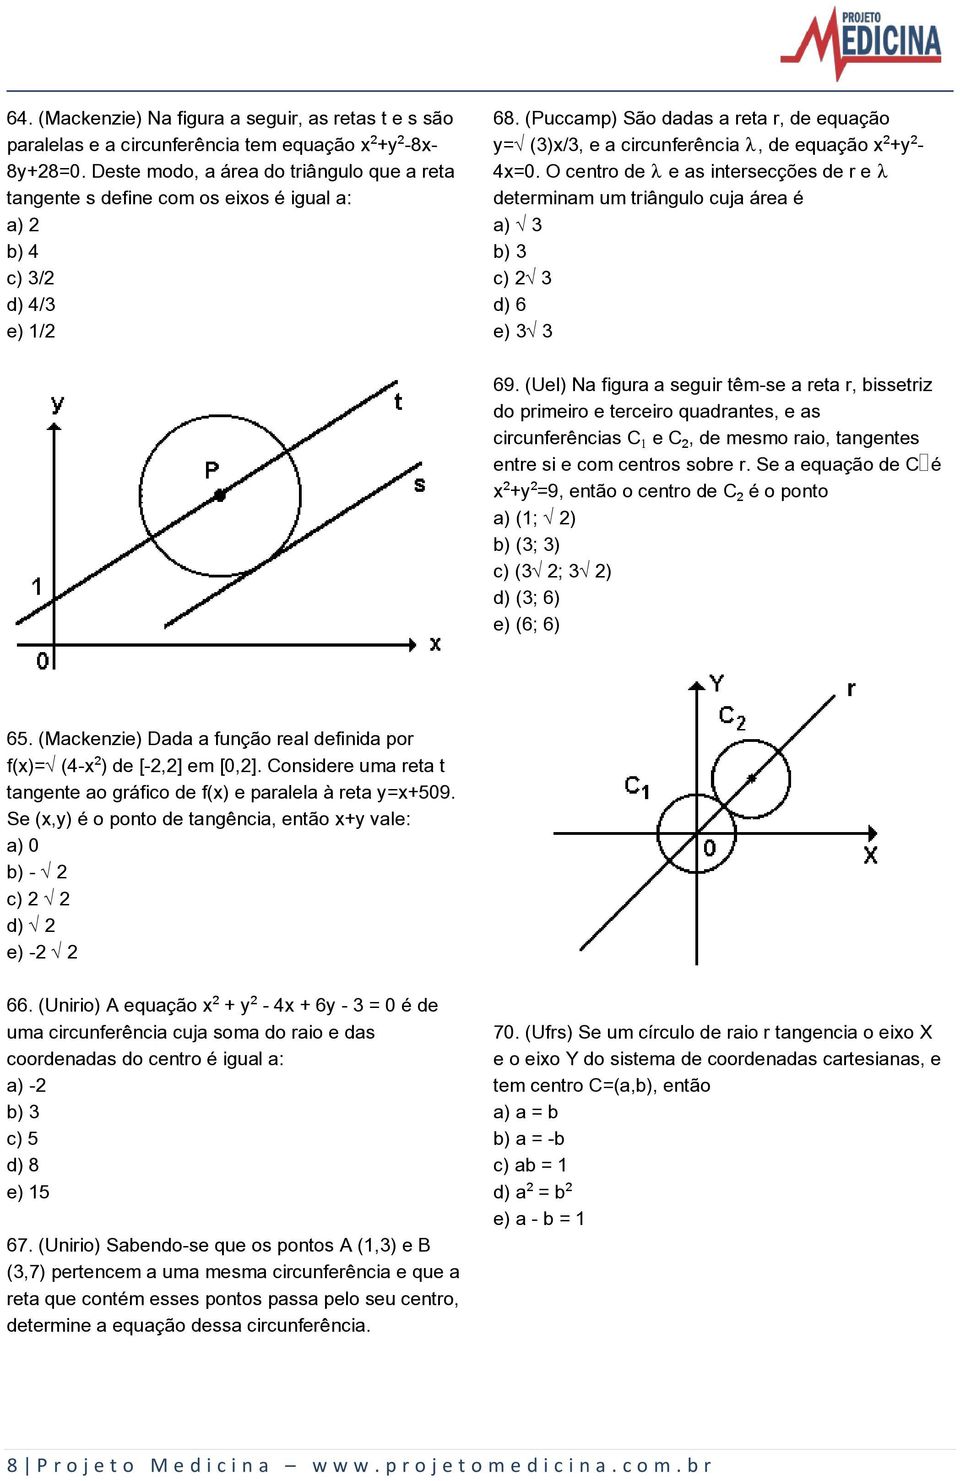 (Puccamp) São dadas a reta r, de equação y=ë(3)x/3, e a circunferência, de equação x +y - 4x=0.